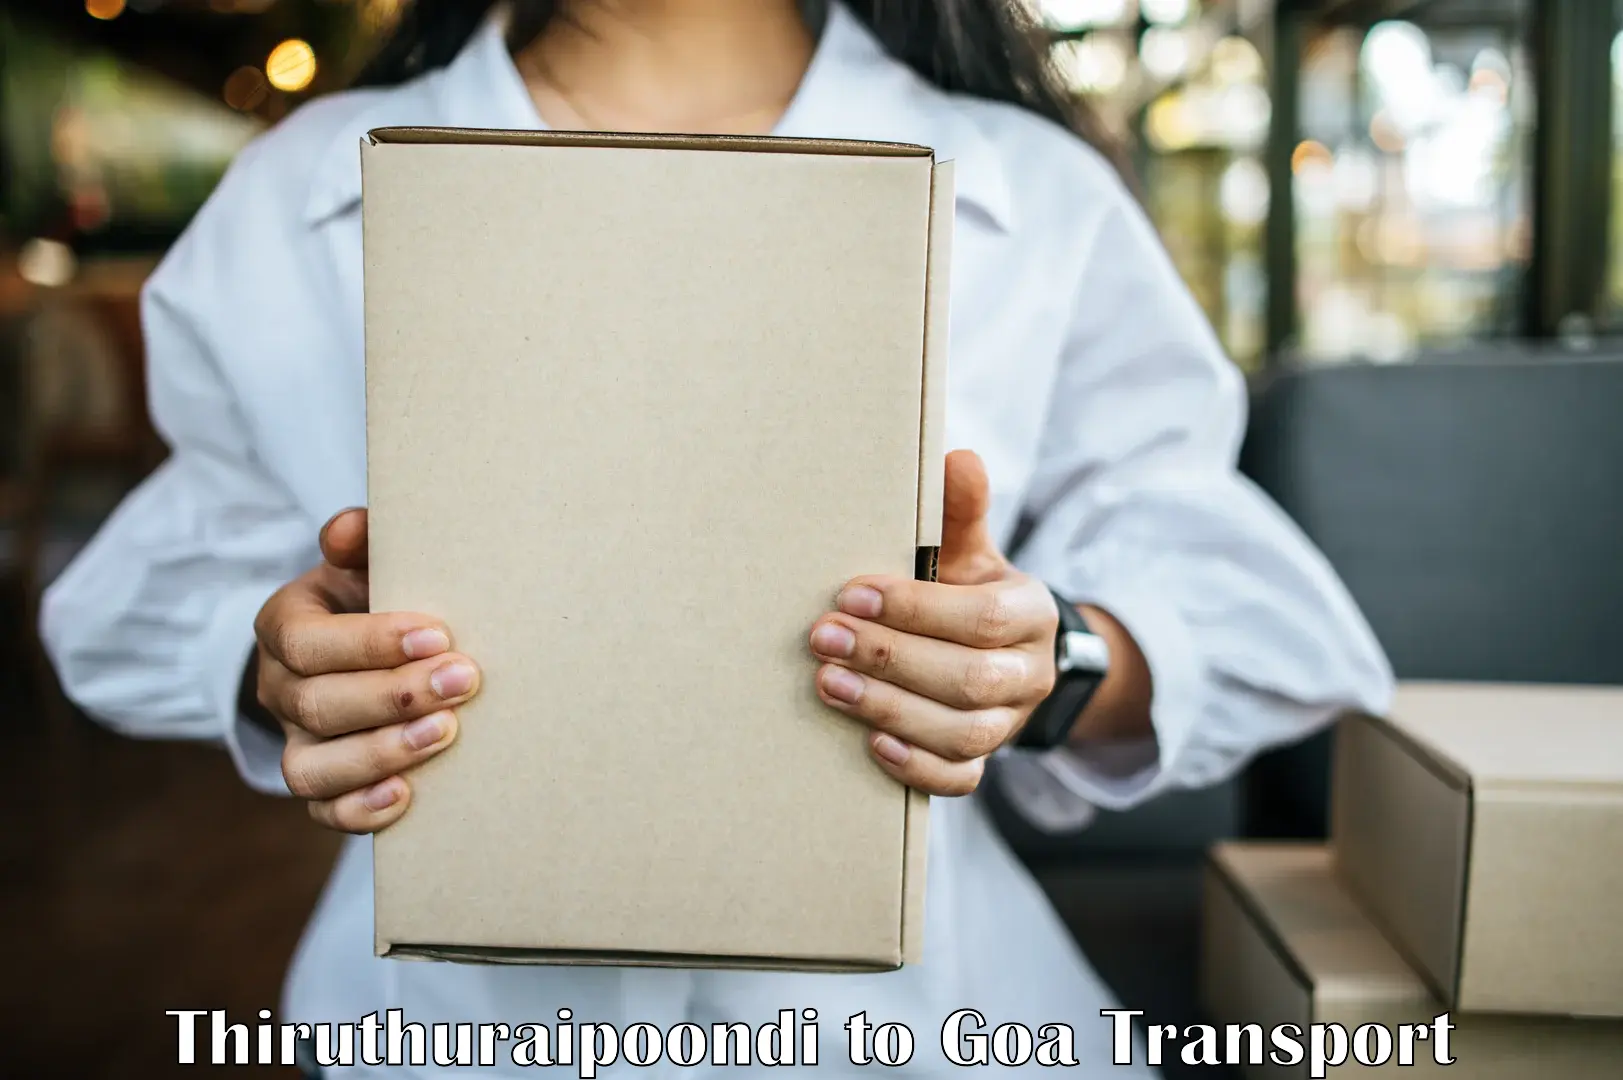 Transport shared services Thiruthuraipoondi to Vasco da Gama